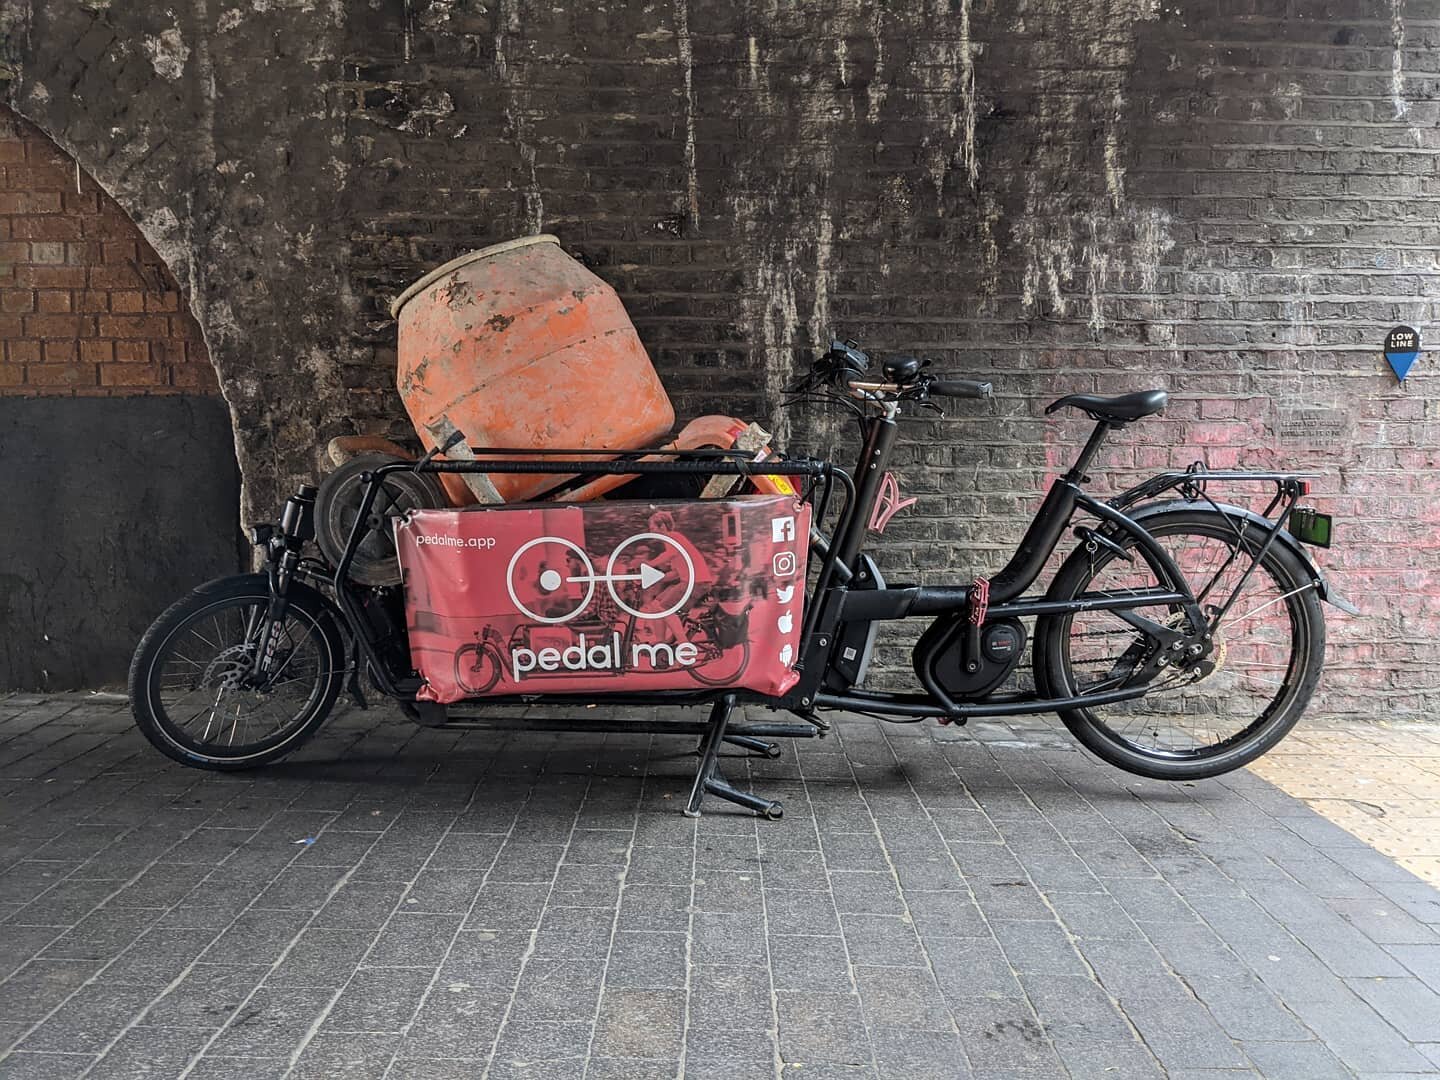 Plant by bike. @pedalmeapp #cargobike #cementmixer